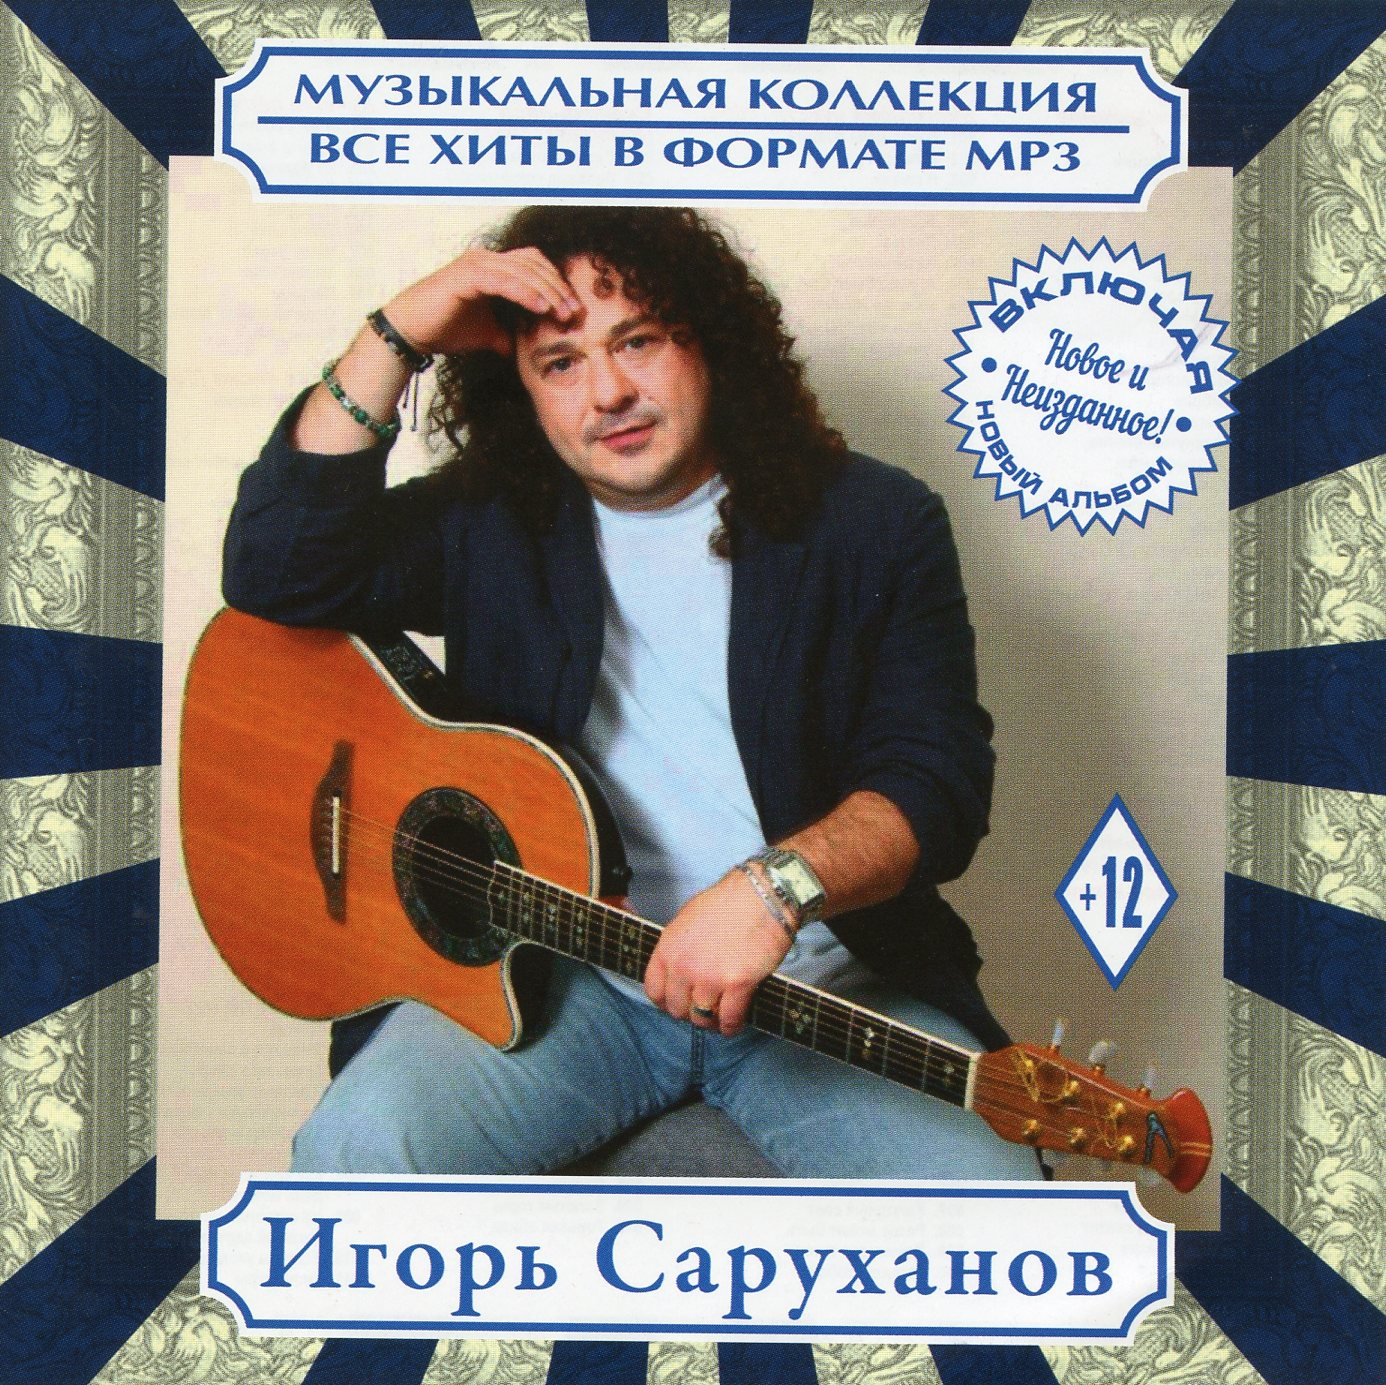 Обложка диска Игорь саруханов